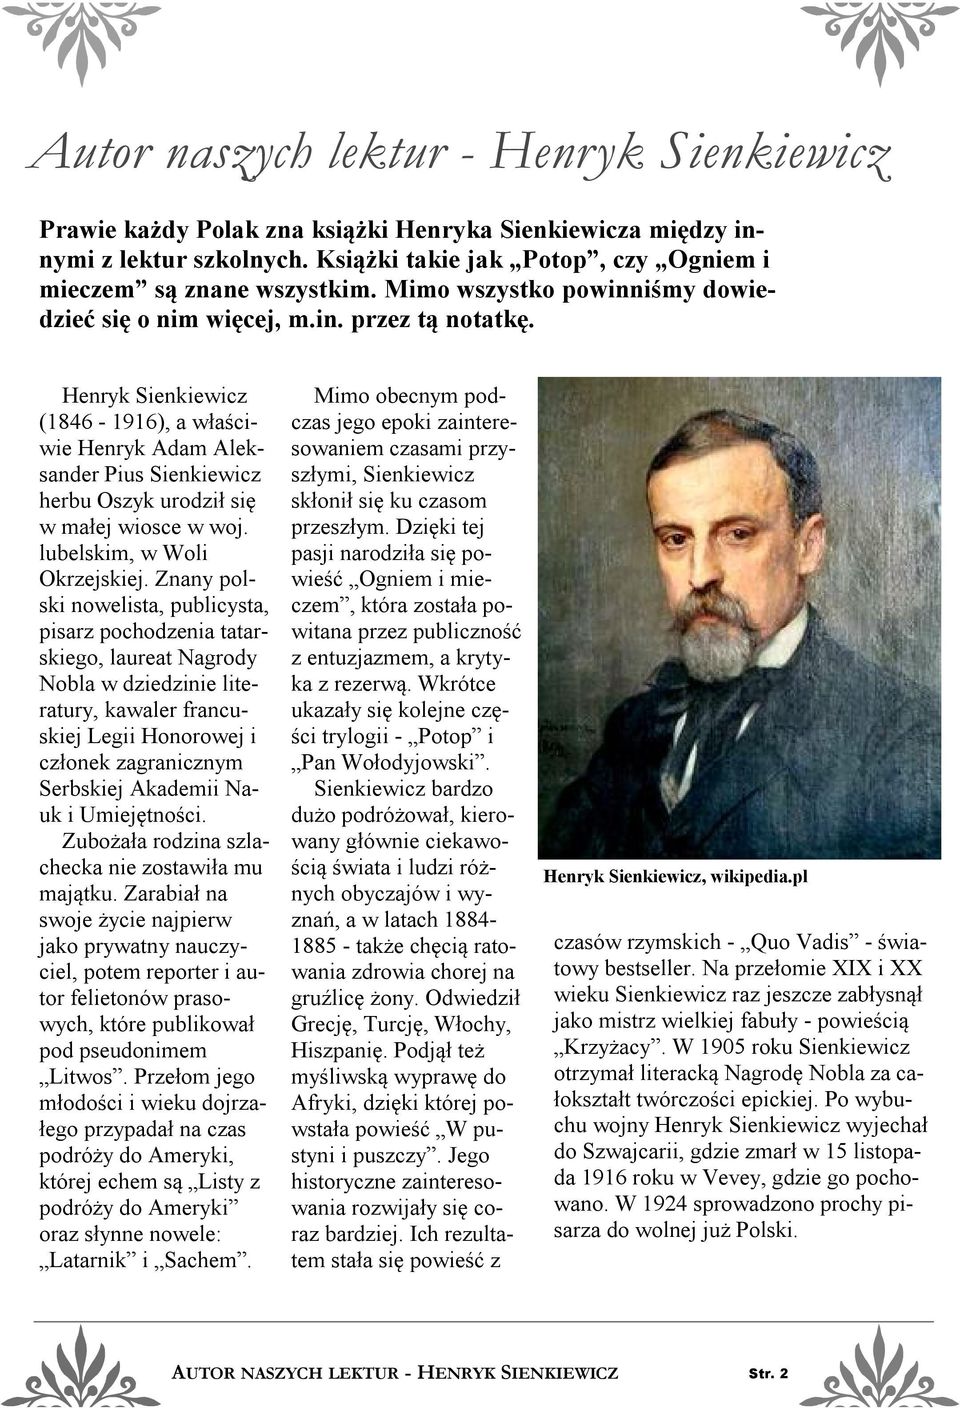 Henryk Sienkiewicz (1846-1916), a właściwie Henryk Adam Aleksander Pius Sienkiewicz herbu Oszyk urodził się w małej wiosce w woj. lubelskim, w Woli Okrzejskiej.